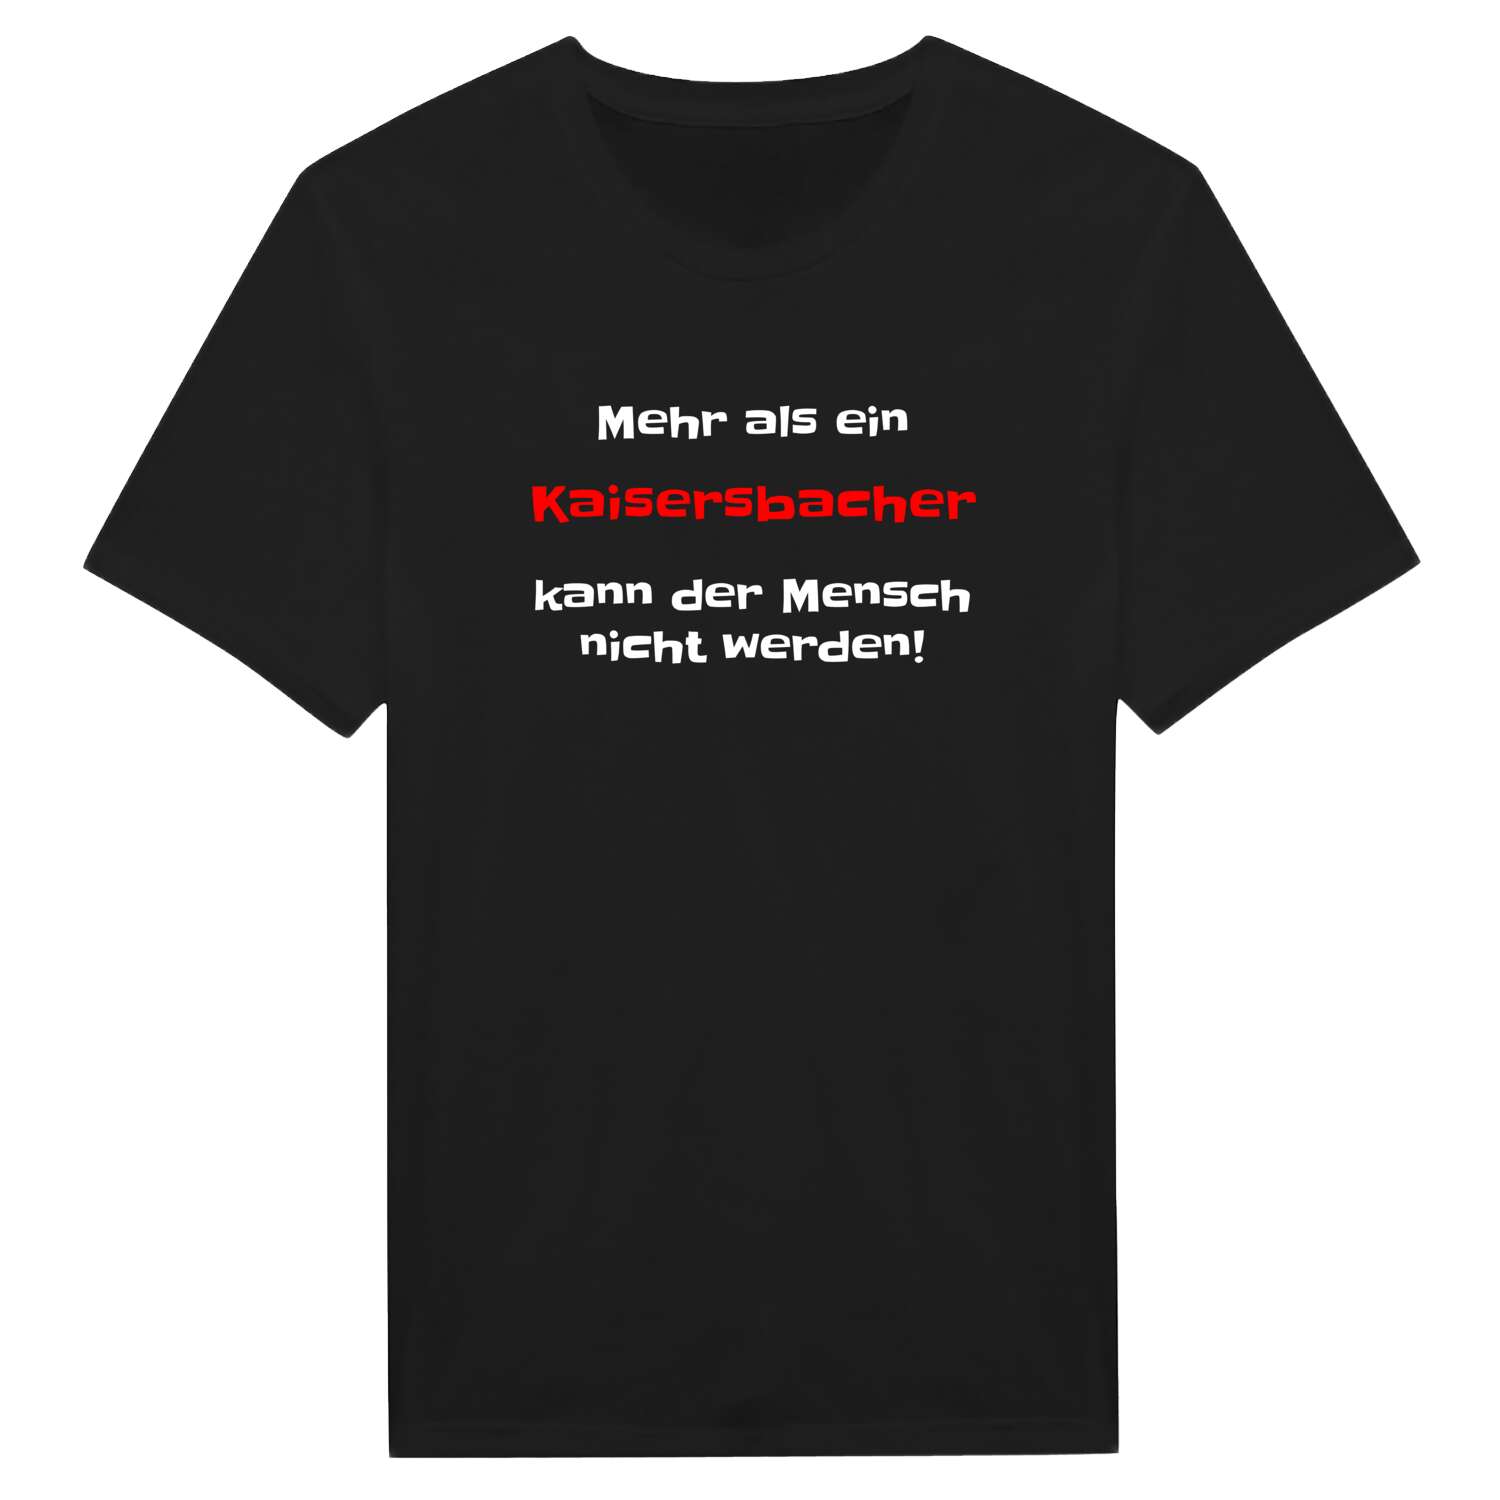 Kaisersbach T-Shirt »Mehr als ein«